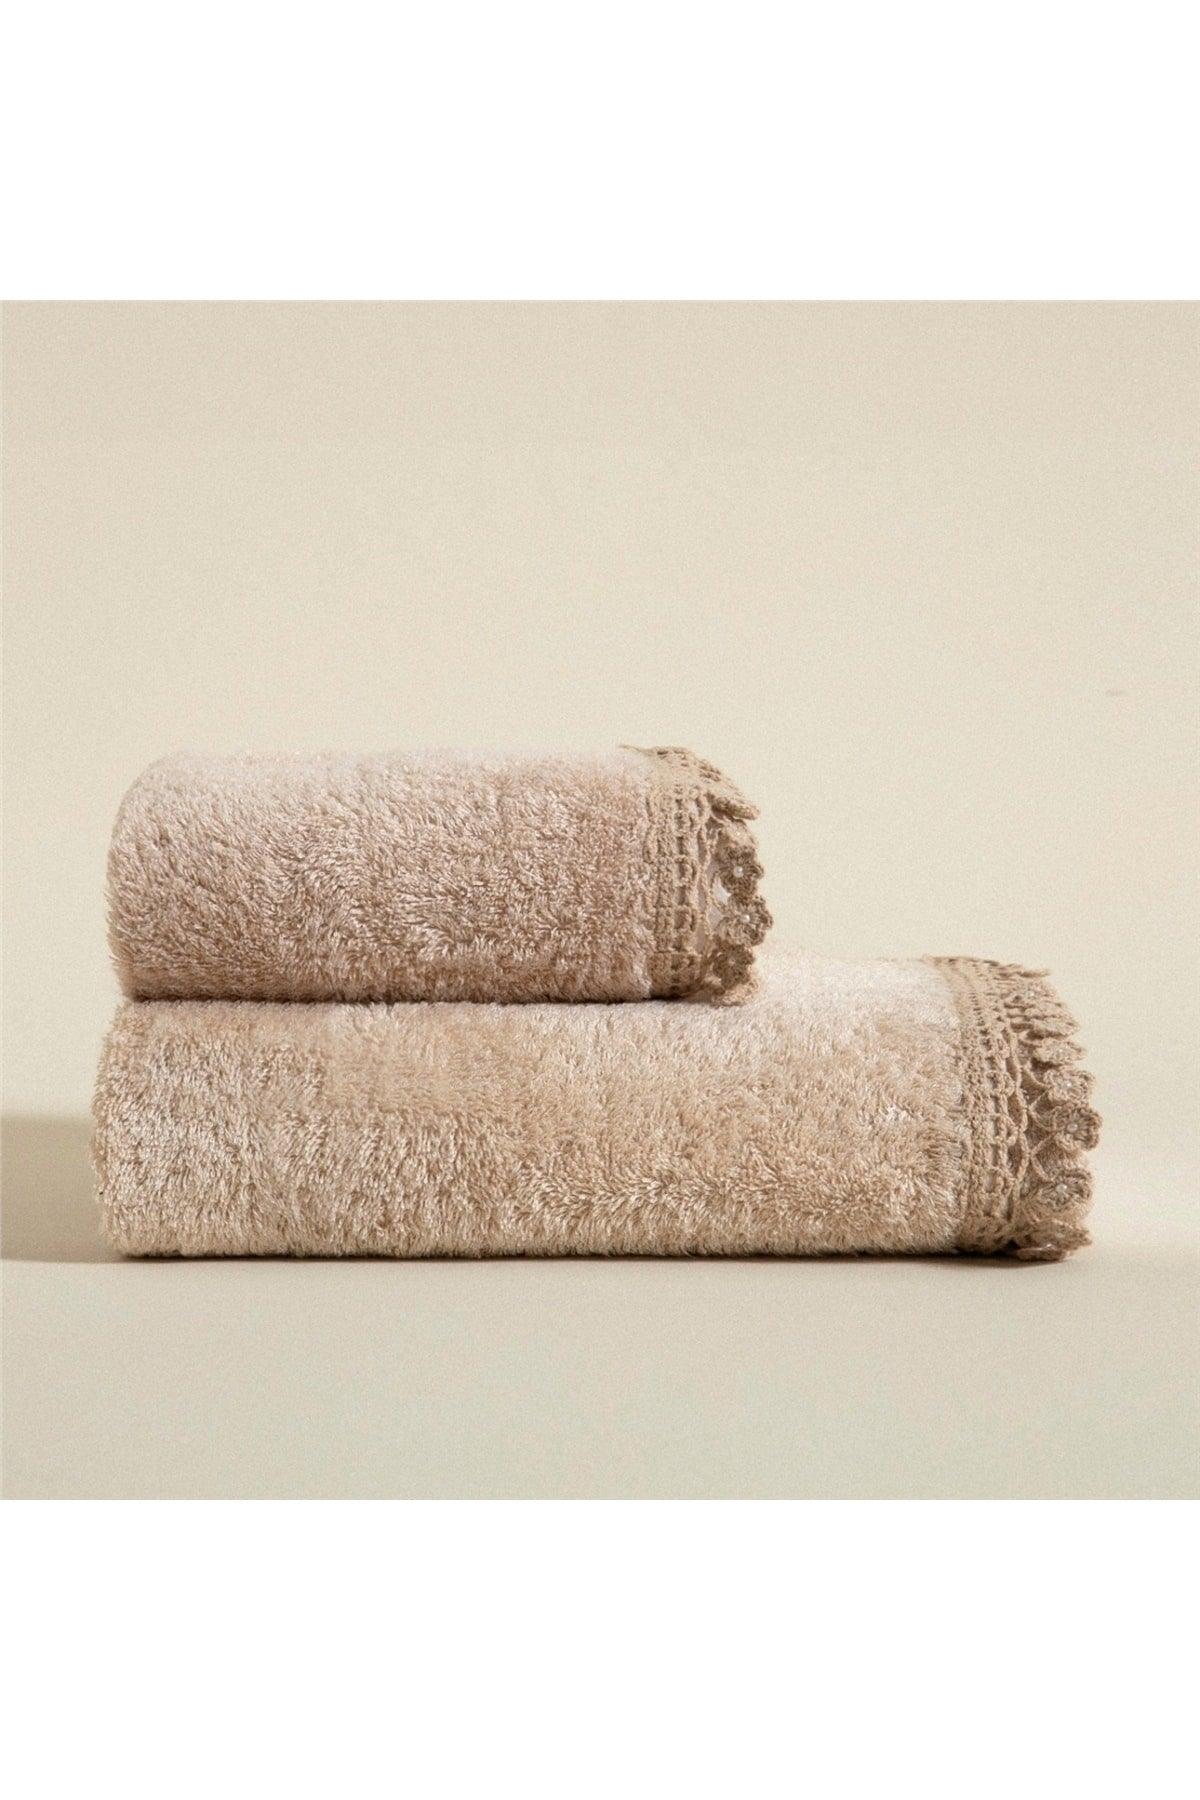 Madre Hand Towel 30x50 Cm Beige - Swordslife